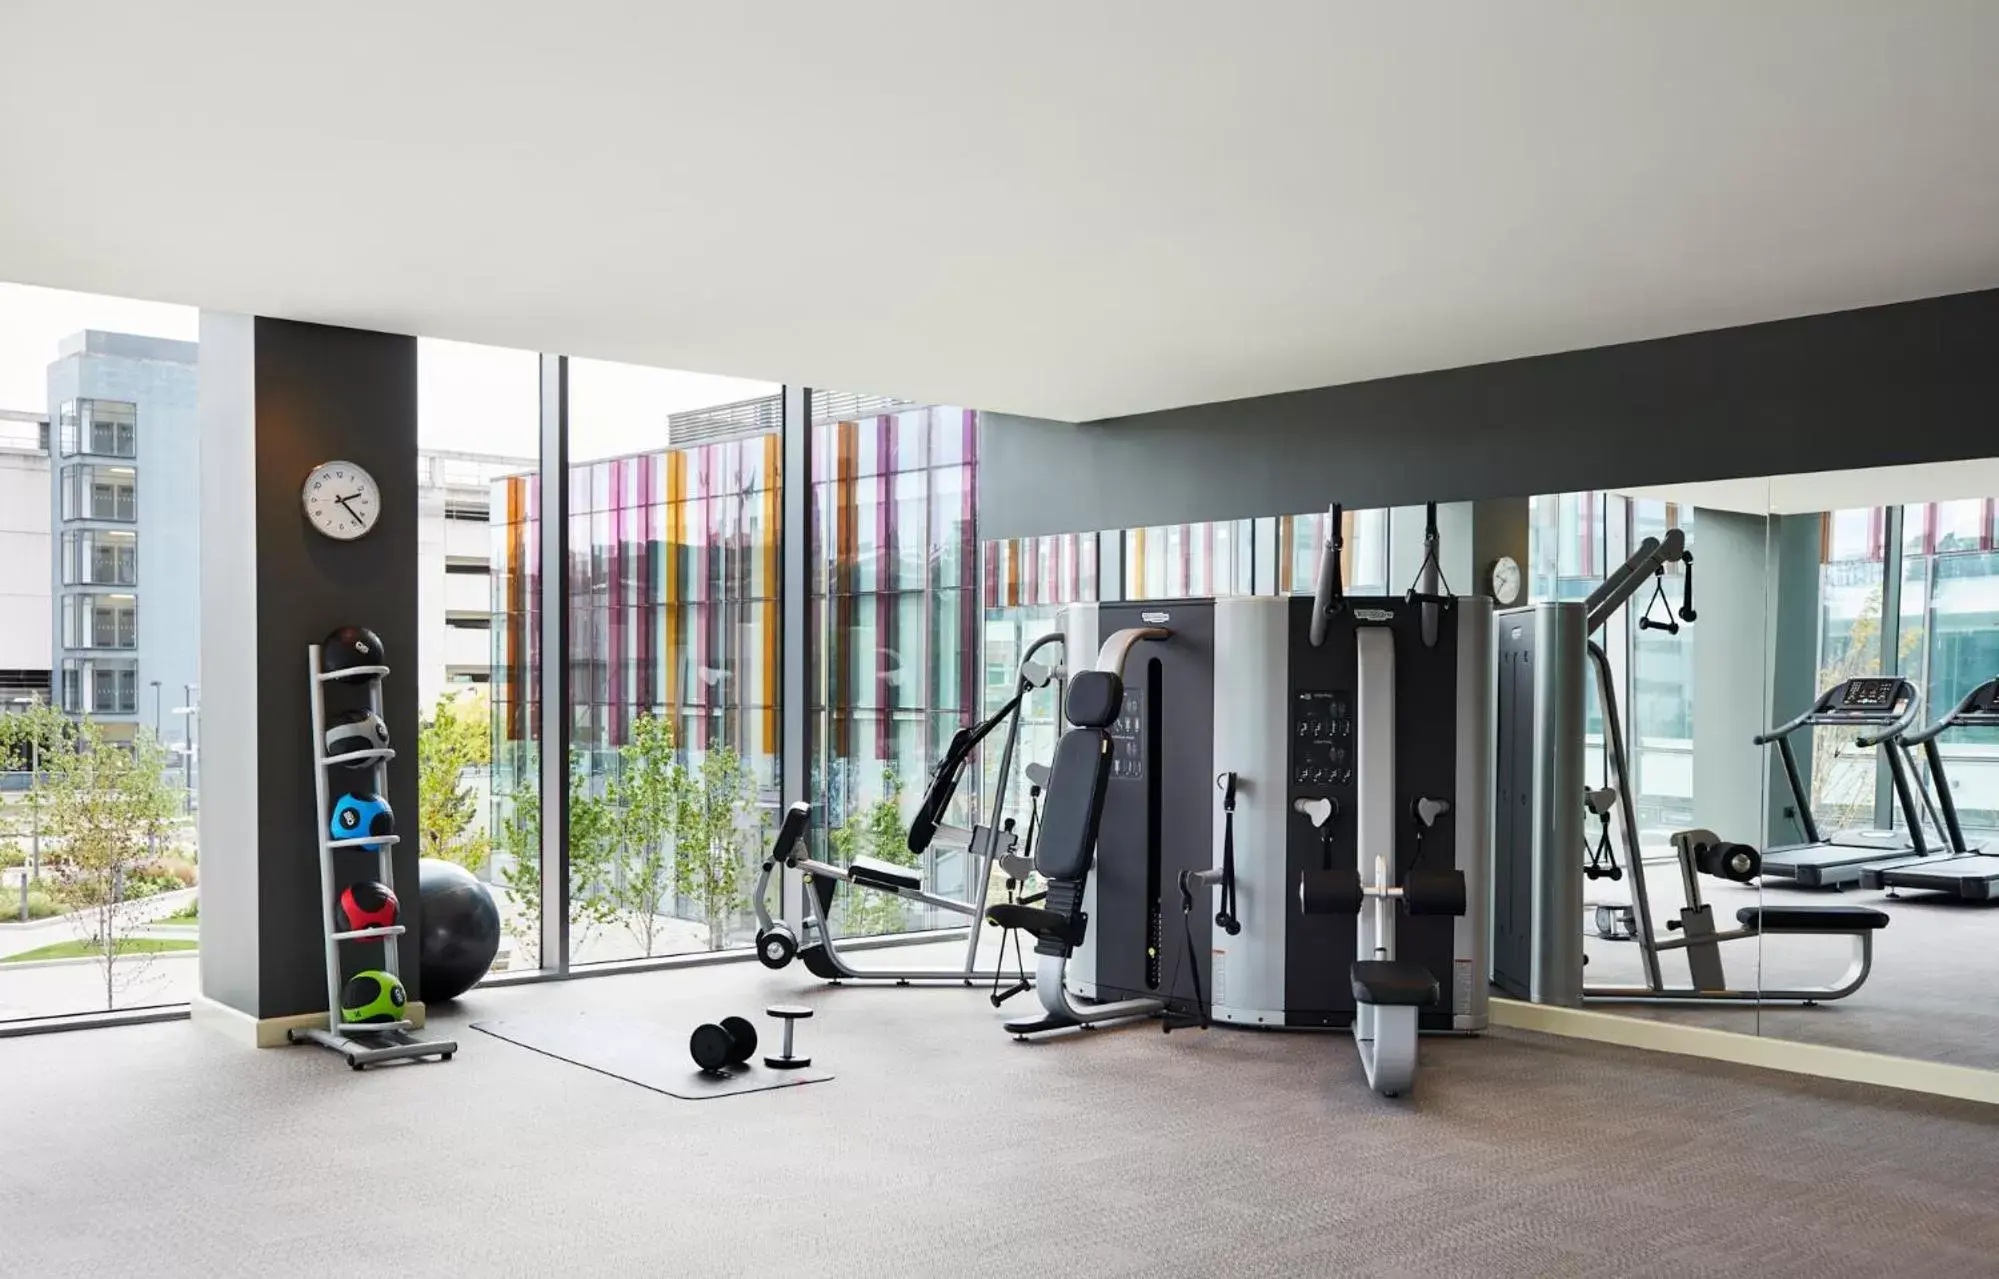 Fitness centre/facilities, Fitness Center/Facilities in Hyatt Regency Manchester